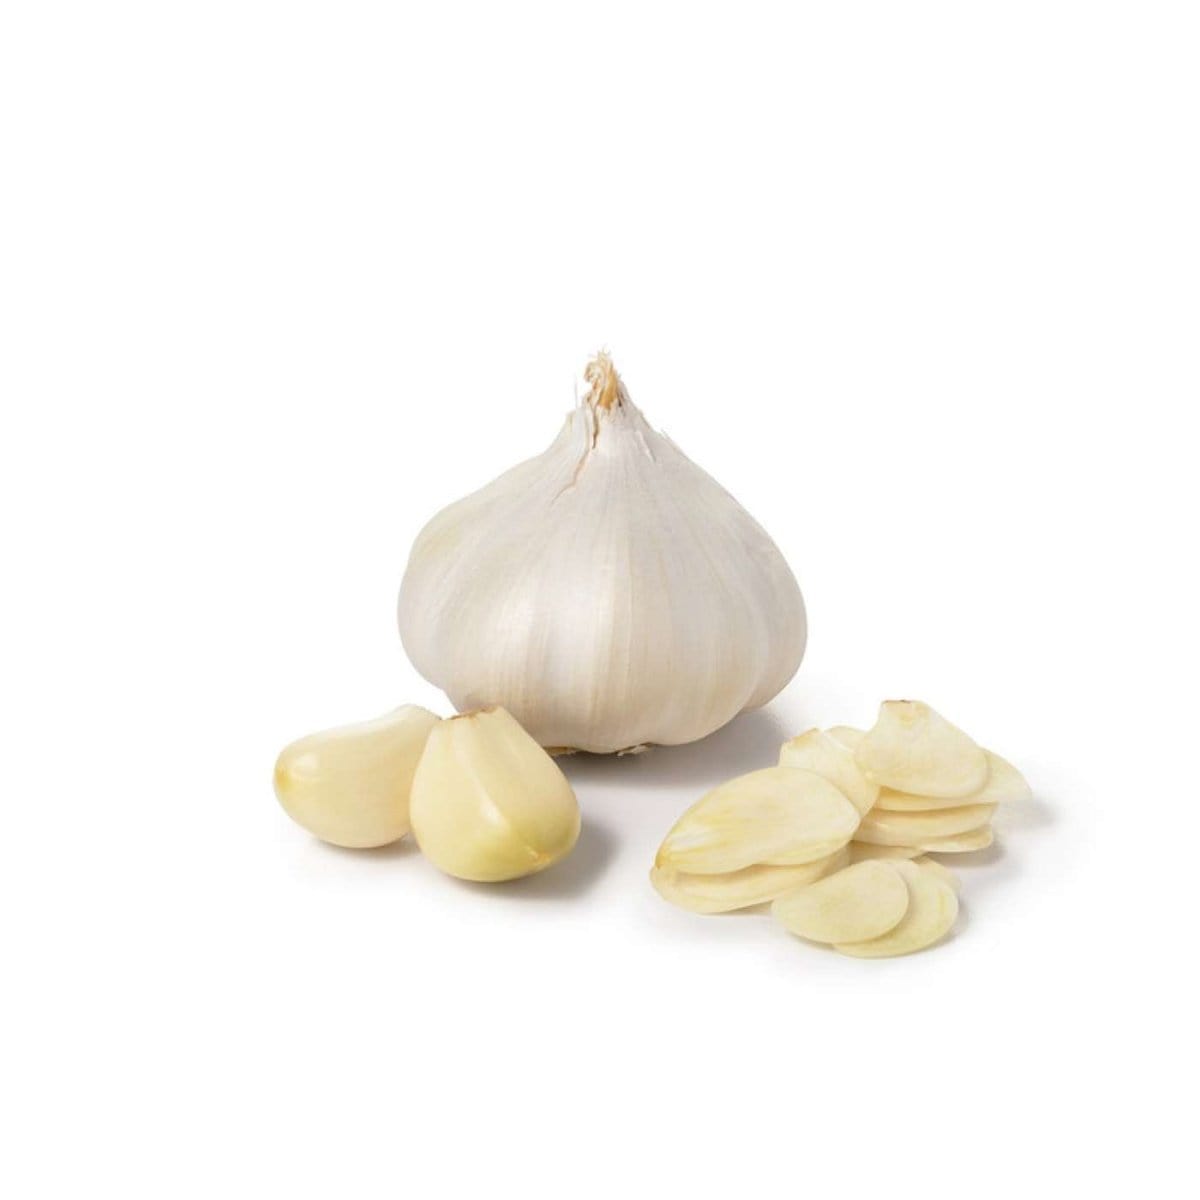 OXO Good Grips Garlic Slicer,White